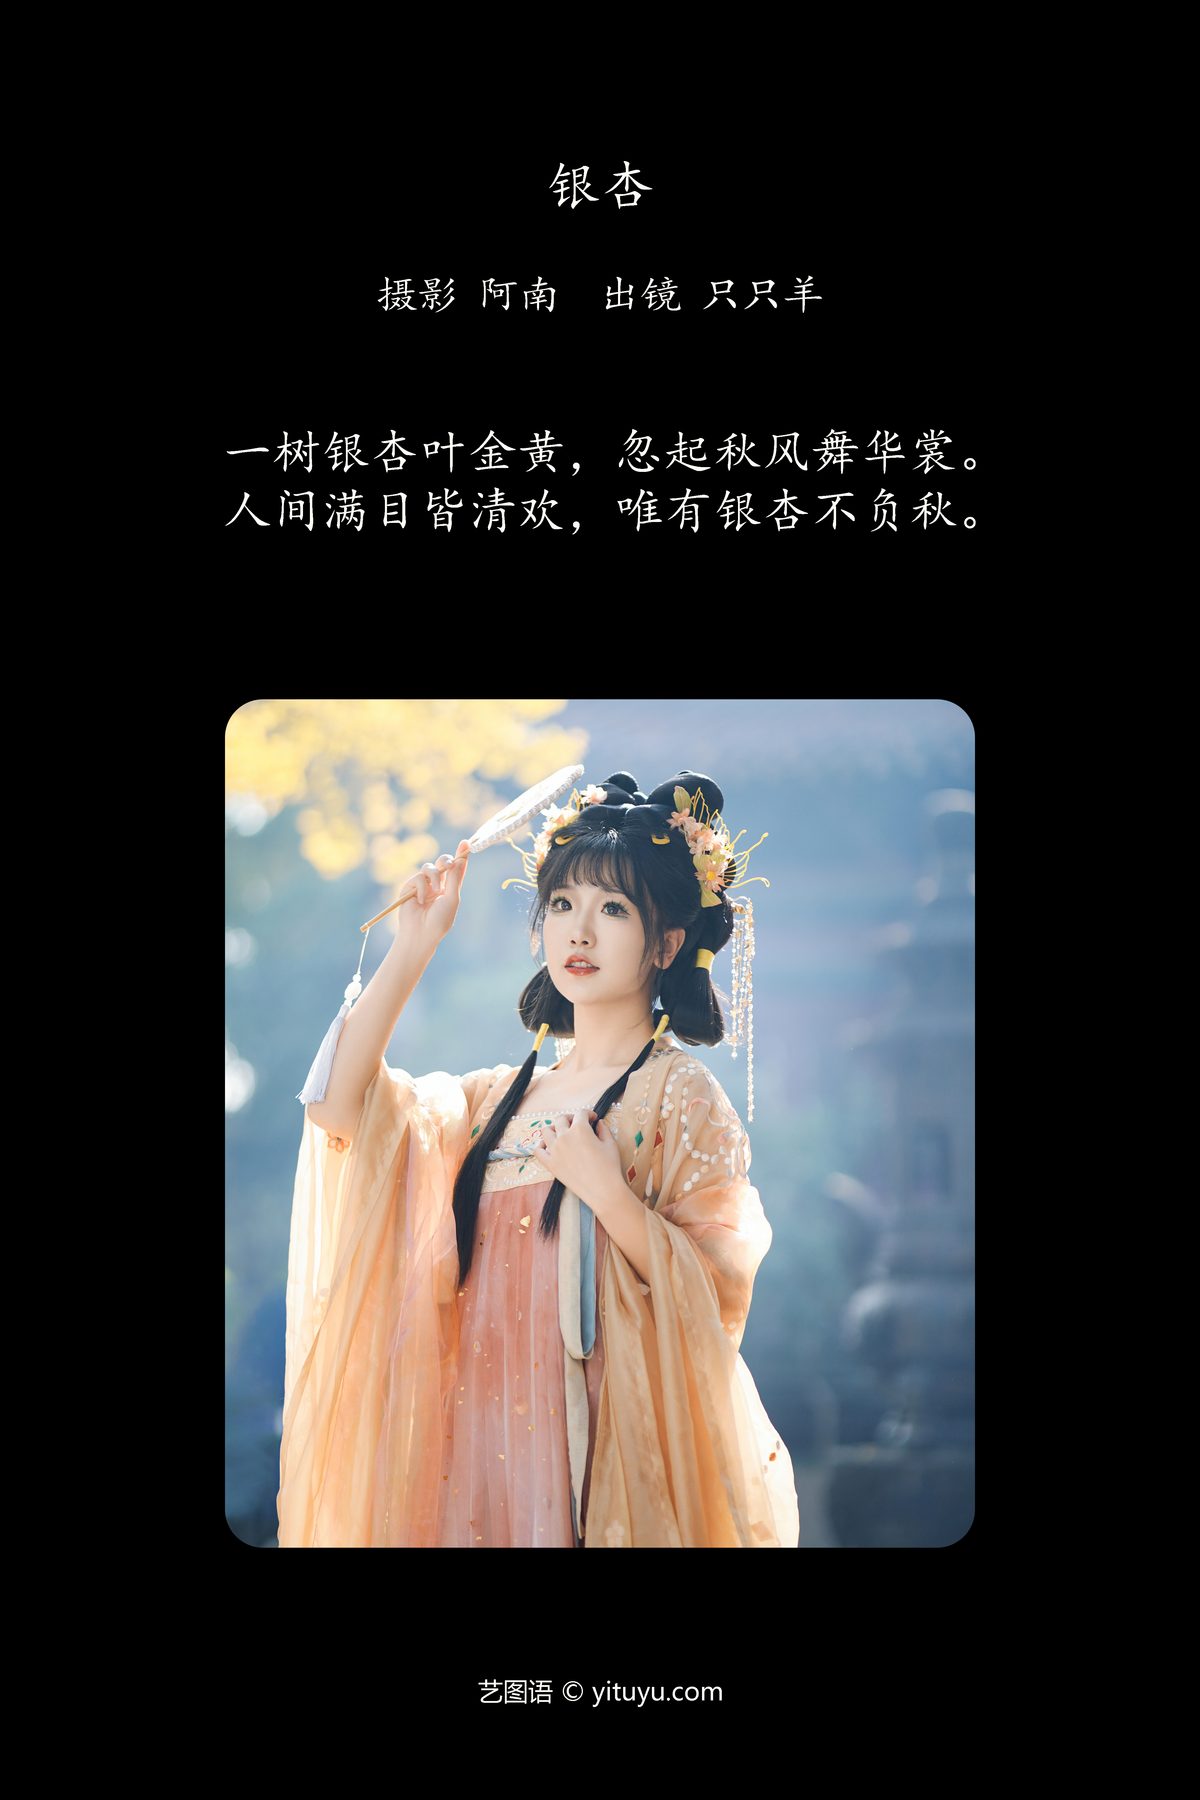 YiTuYu艺图语 Vol 6271 Zhi Zhi Yang 0002 1321880423.jpg